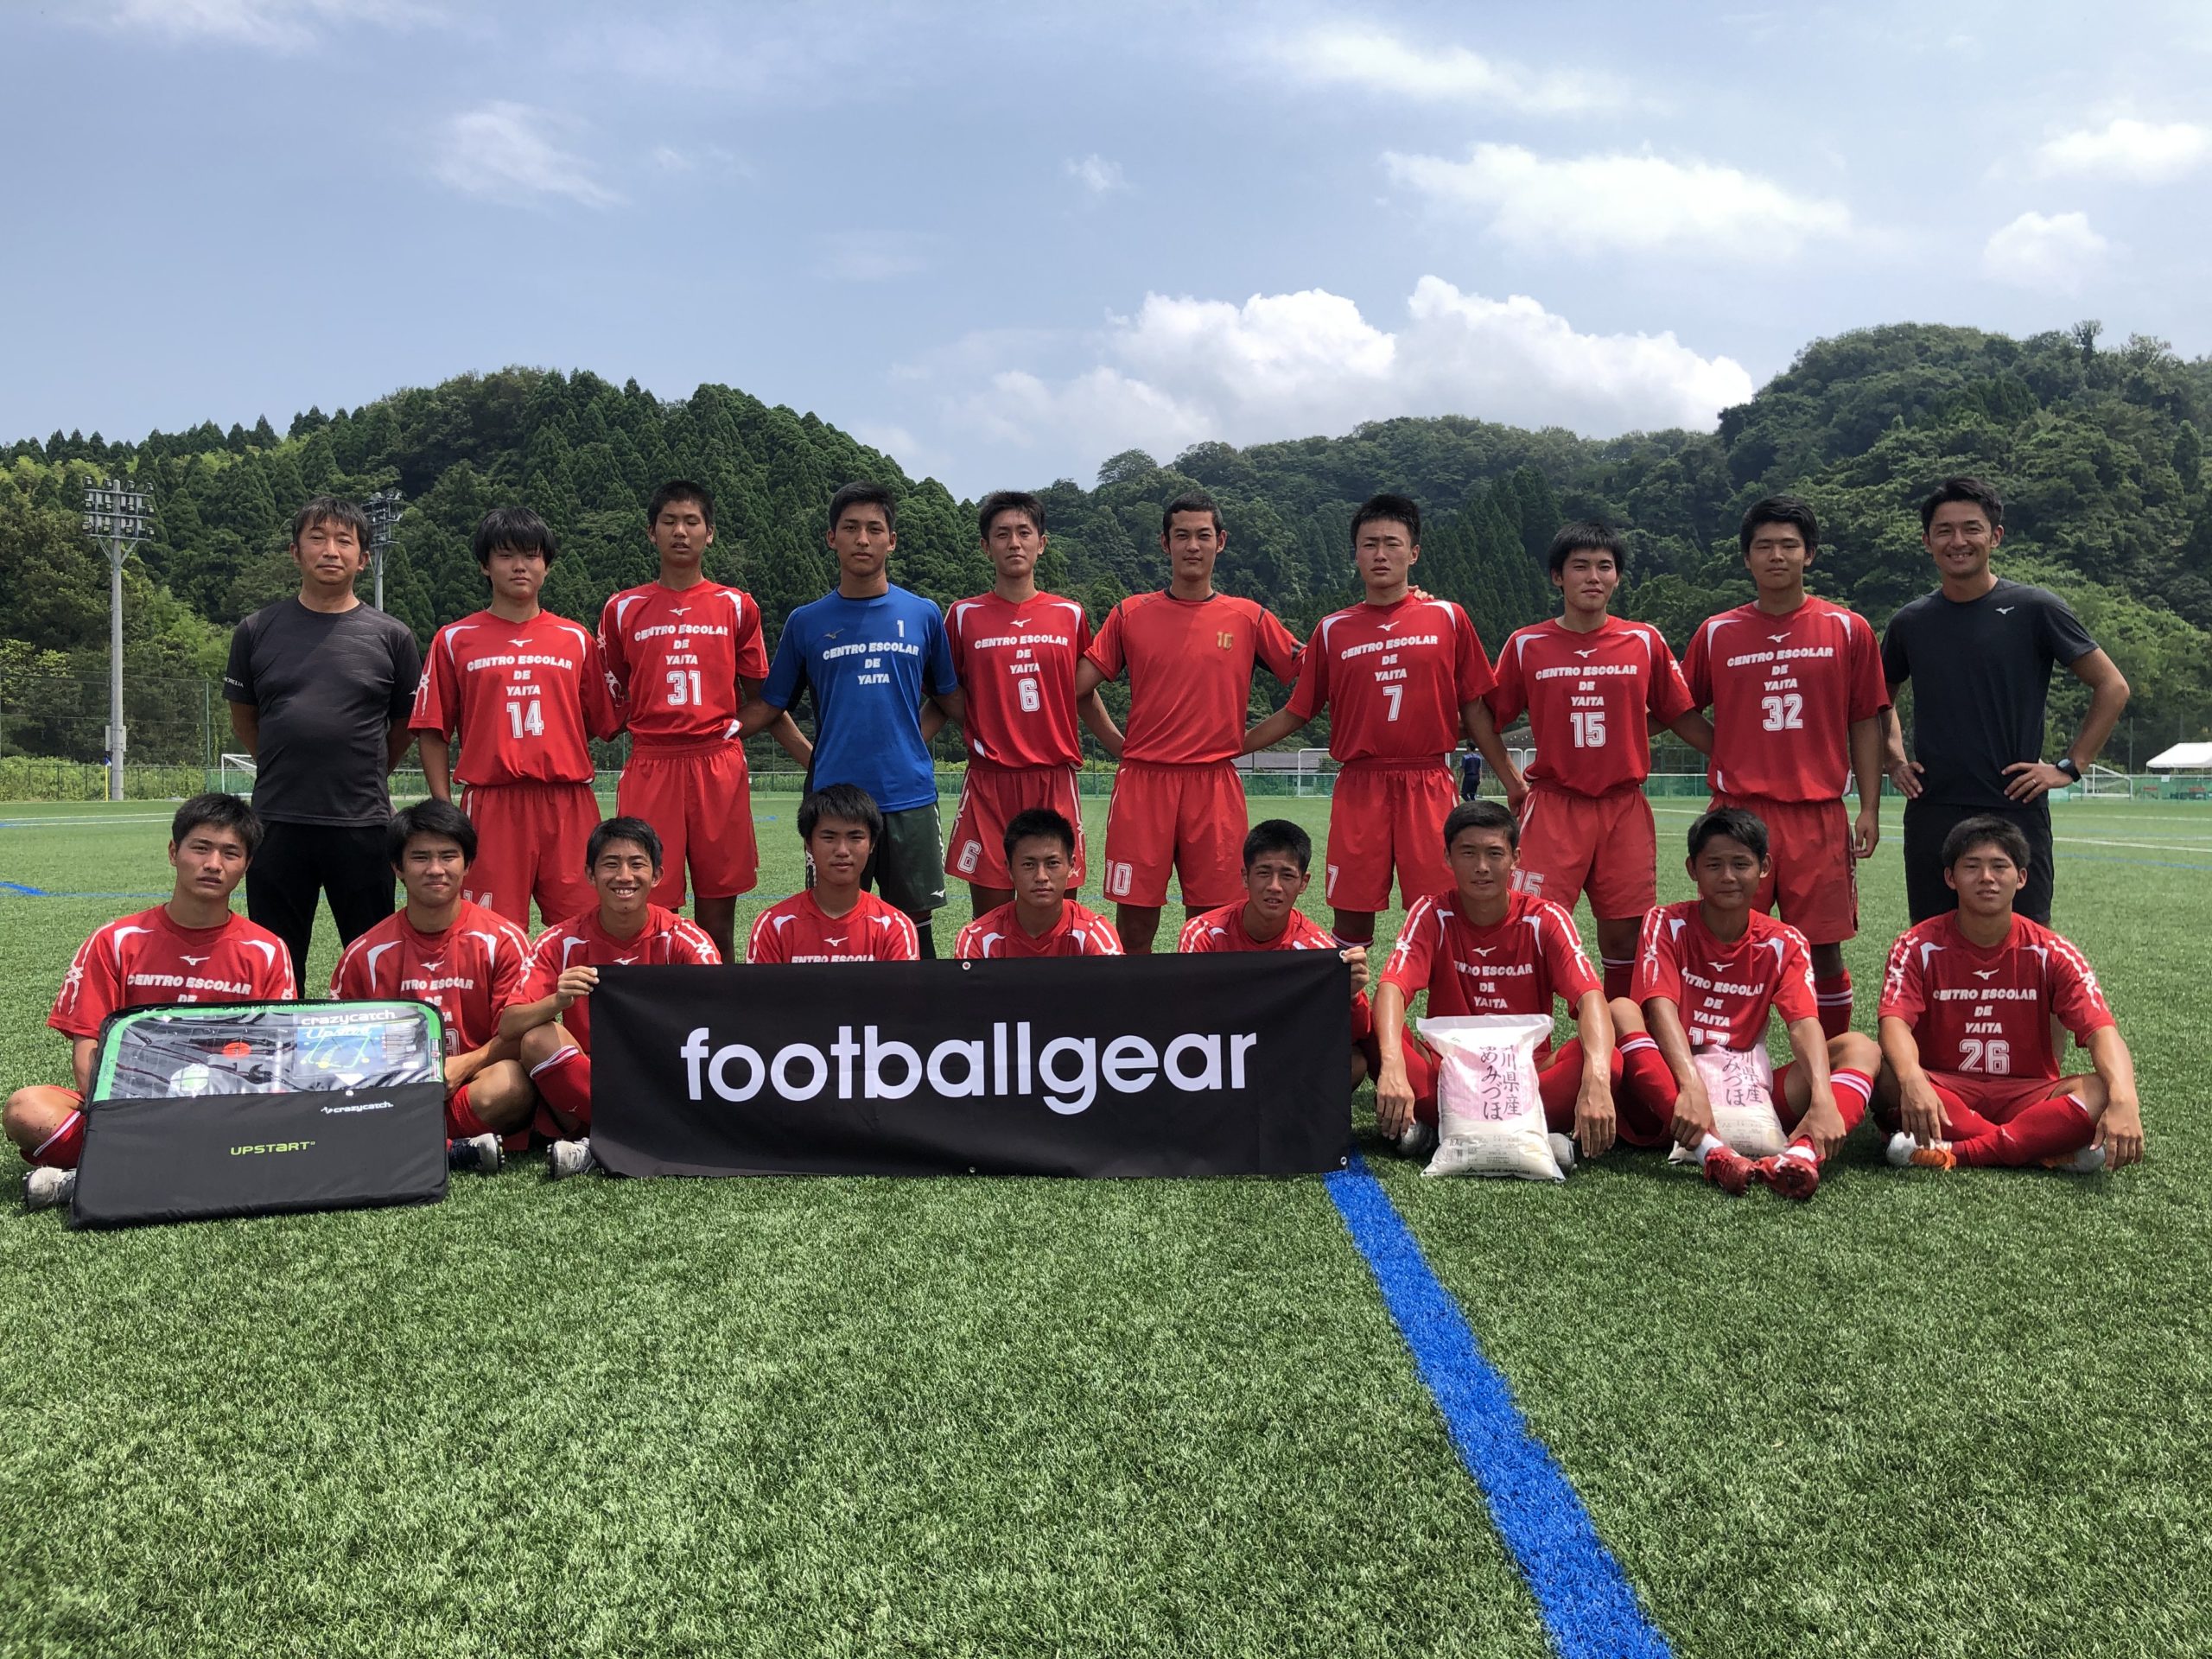 第13回 北陸大学カップ 石川県ユースサッカーフェスティバル